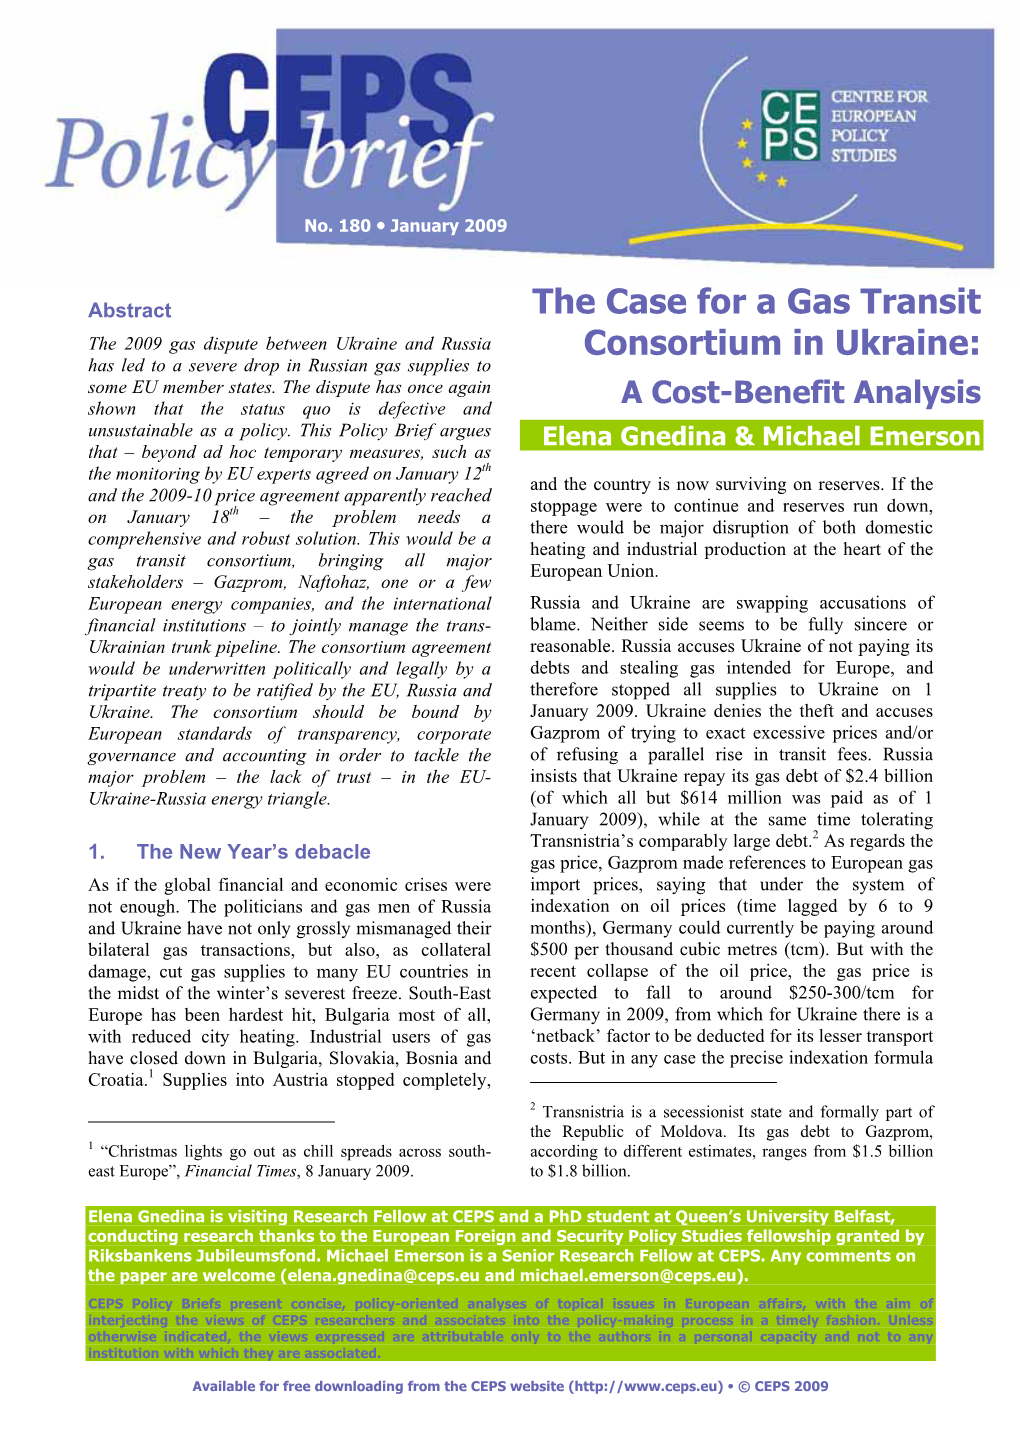 The Case for a Gas Transit Consortium in Ukraine